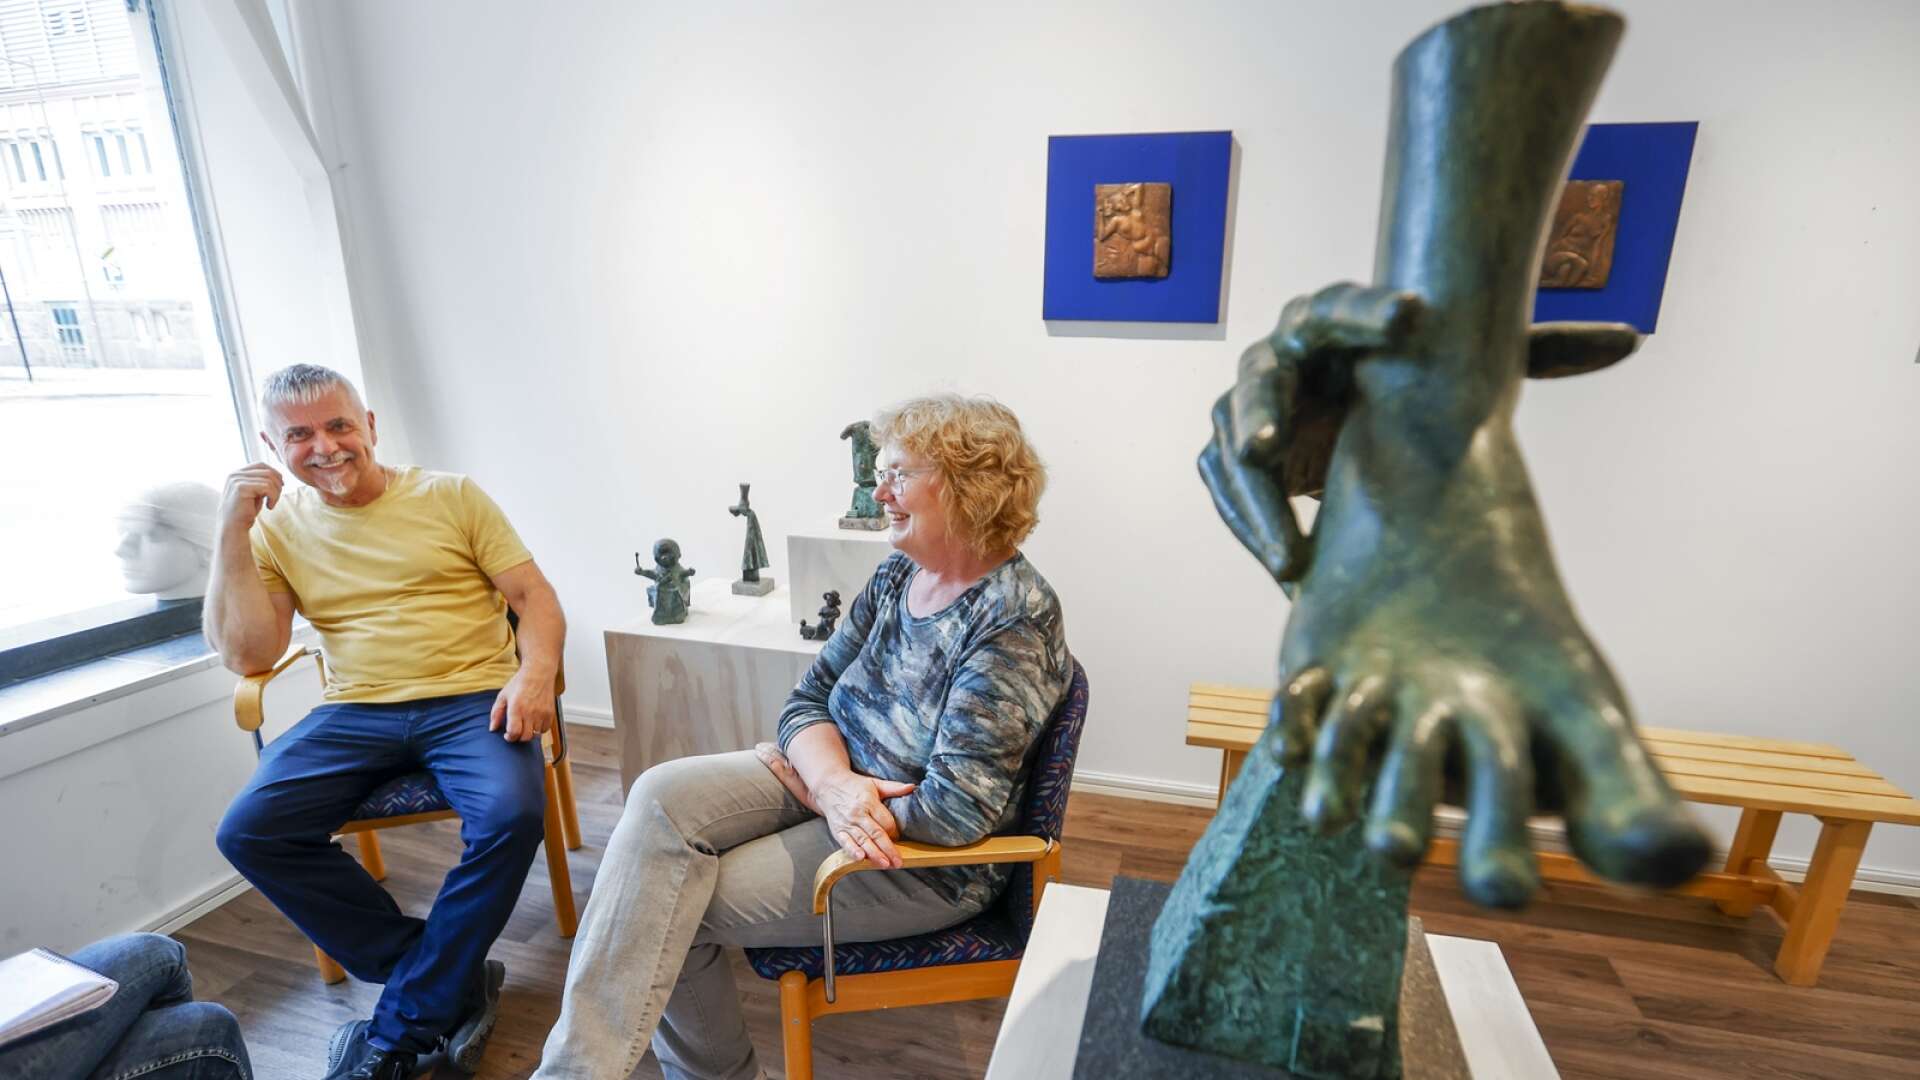 Ann Carlsson Korneev och Viktor Korneev ställer ut på Galleri Konst i Karlstad. De har levt och verkat tillsammans i 25 år och har redan innan utställningen satt spår i Karlstad.